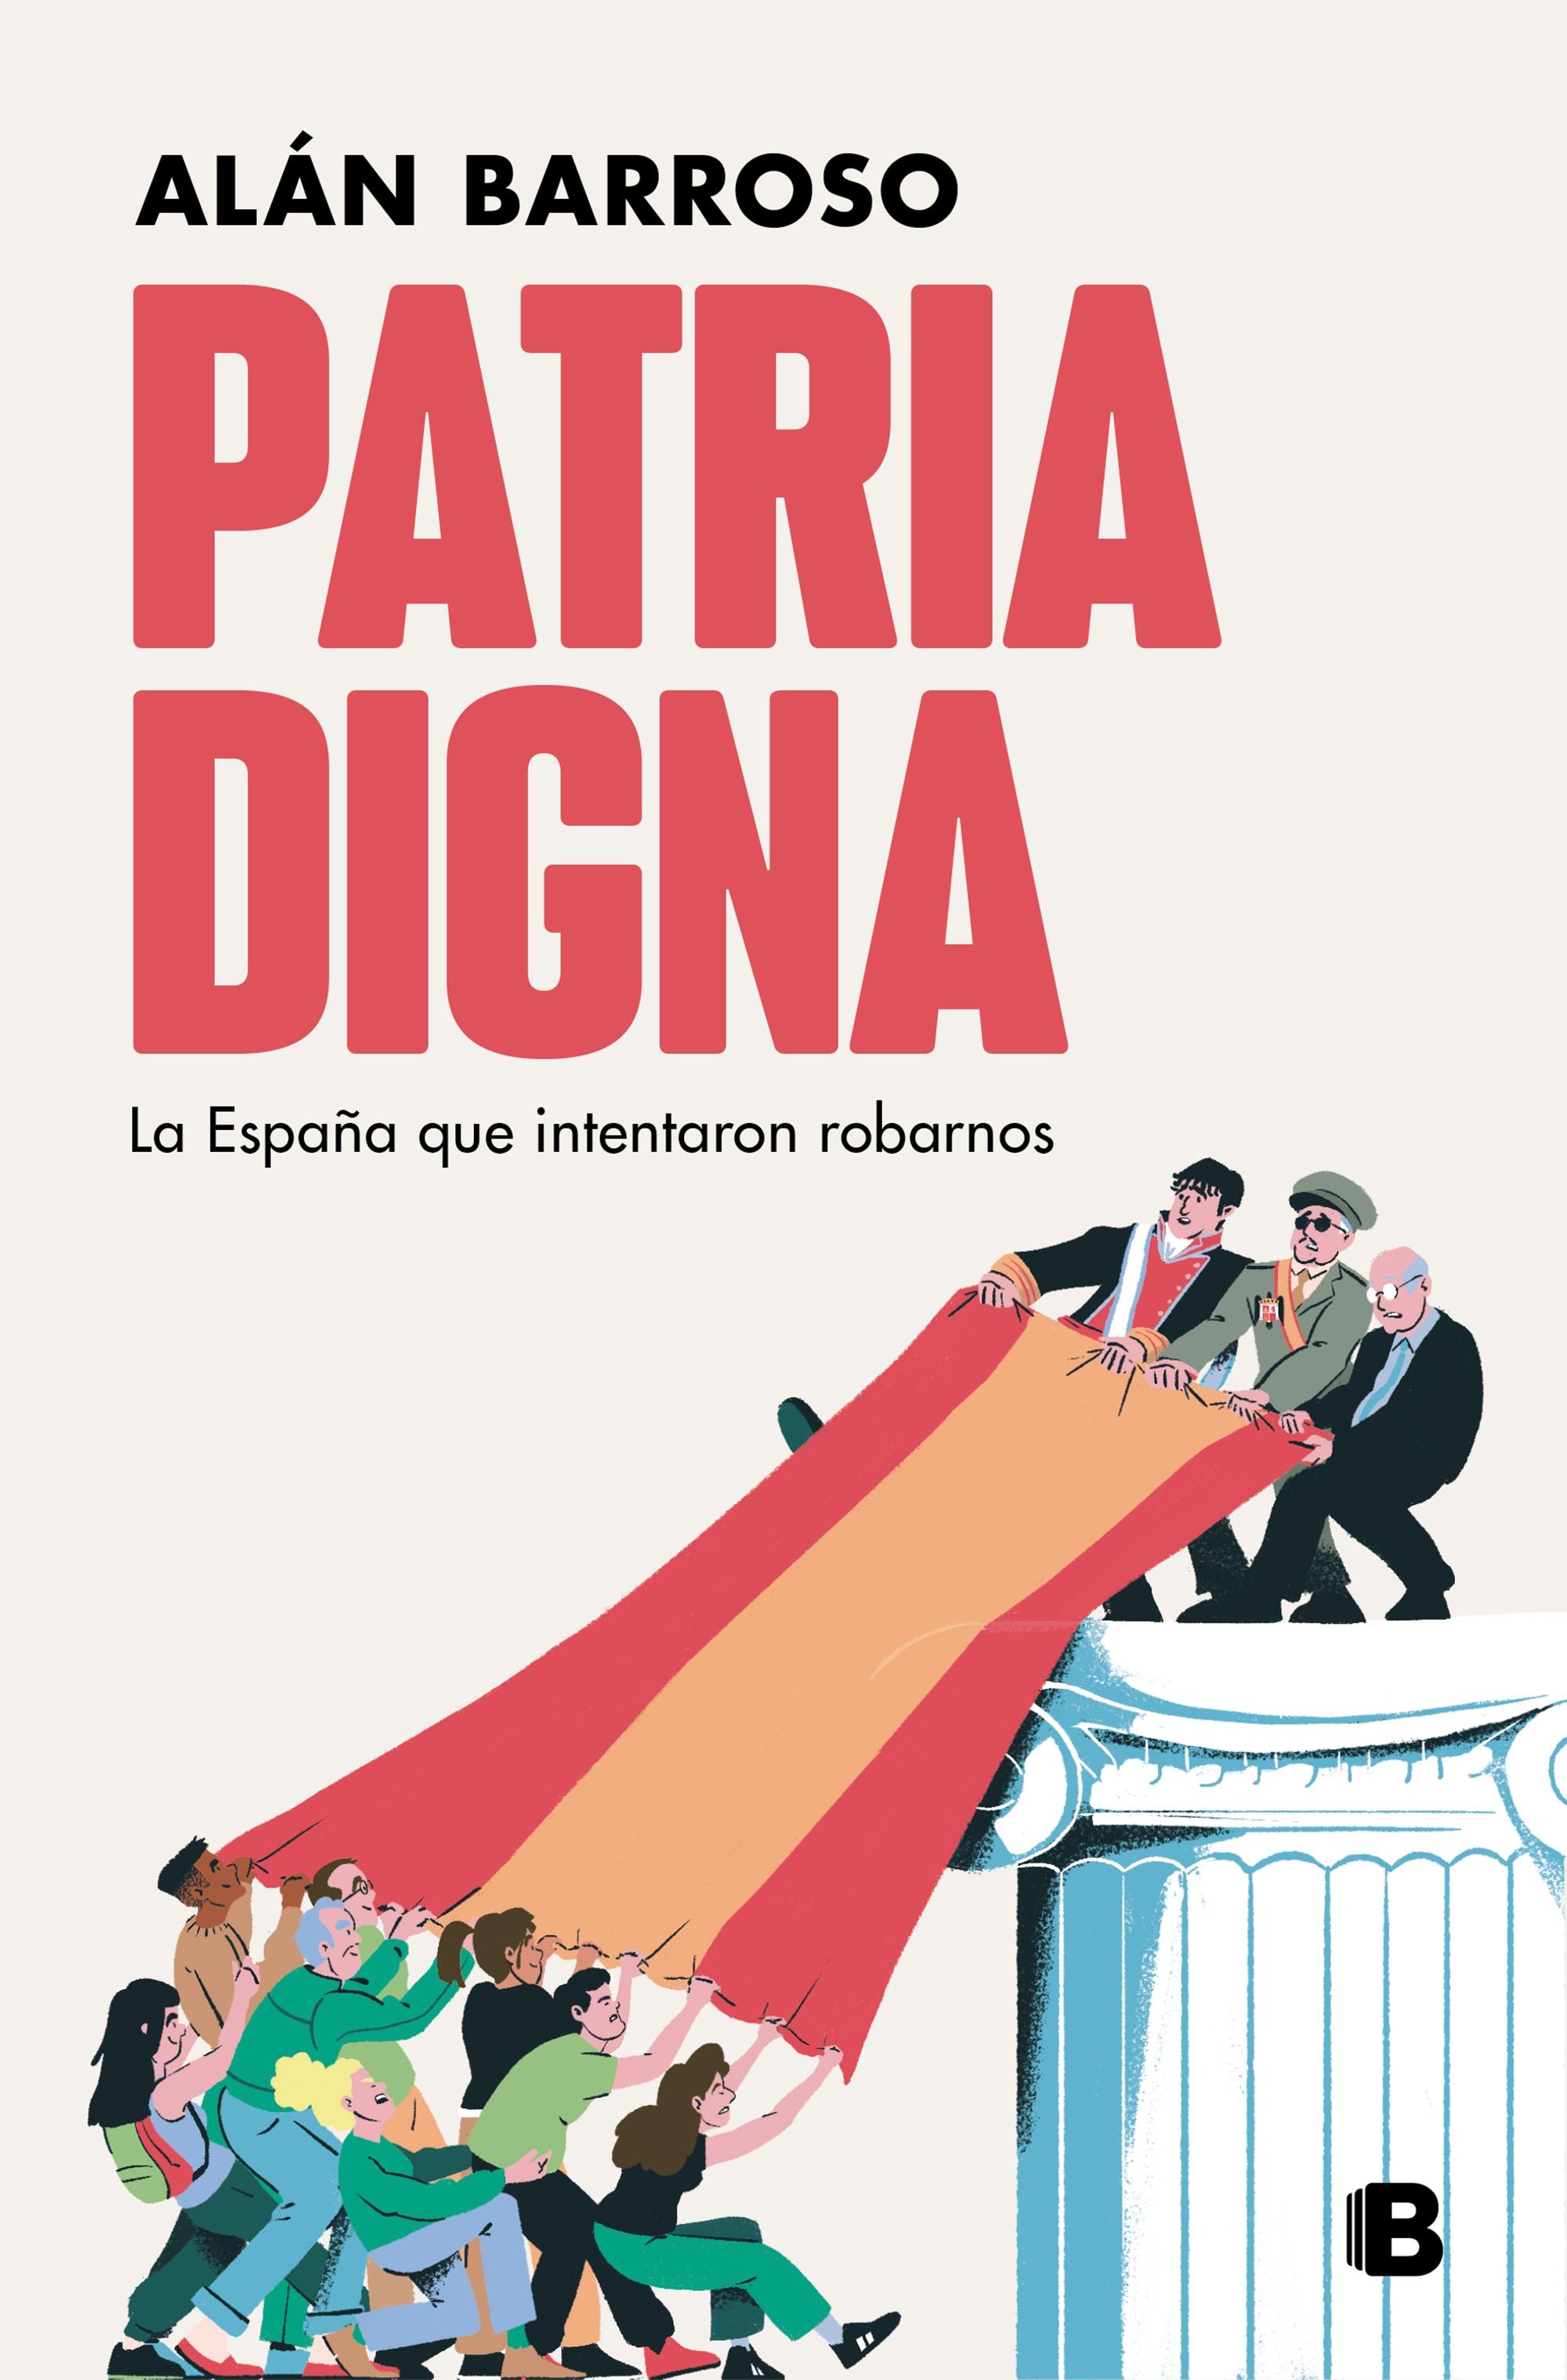 Patria Digna "La España que Intentaron Robarnos"